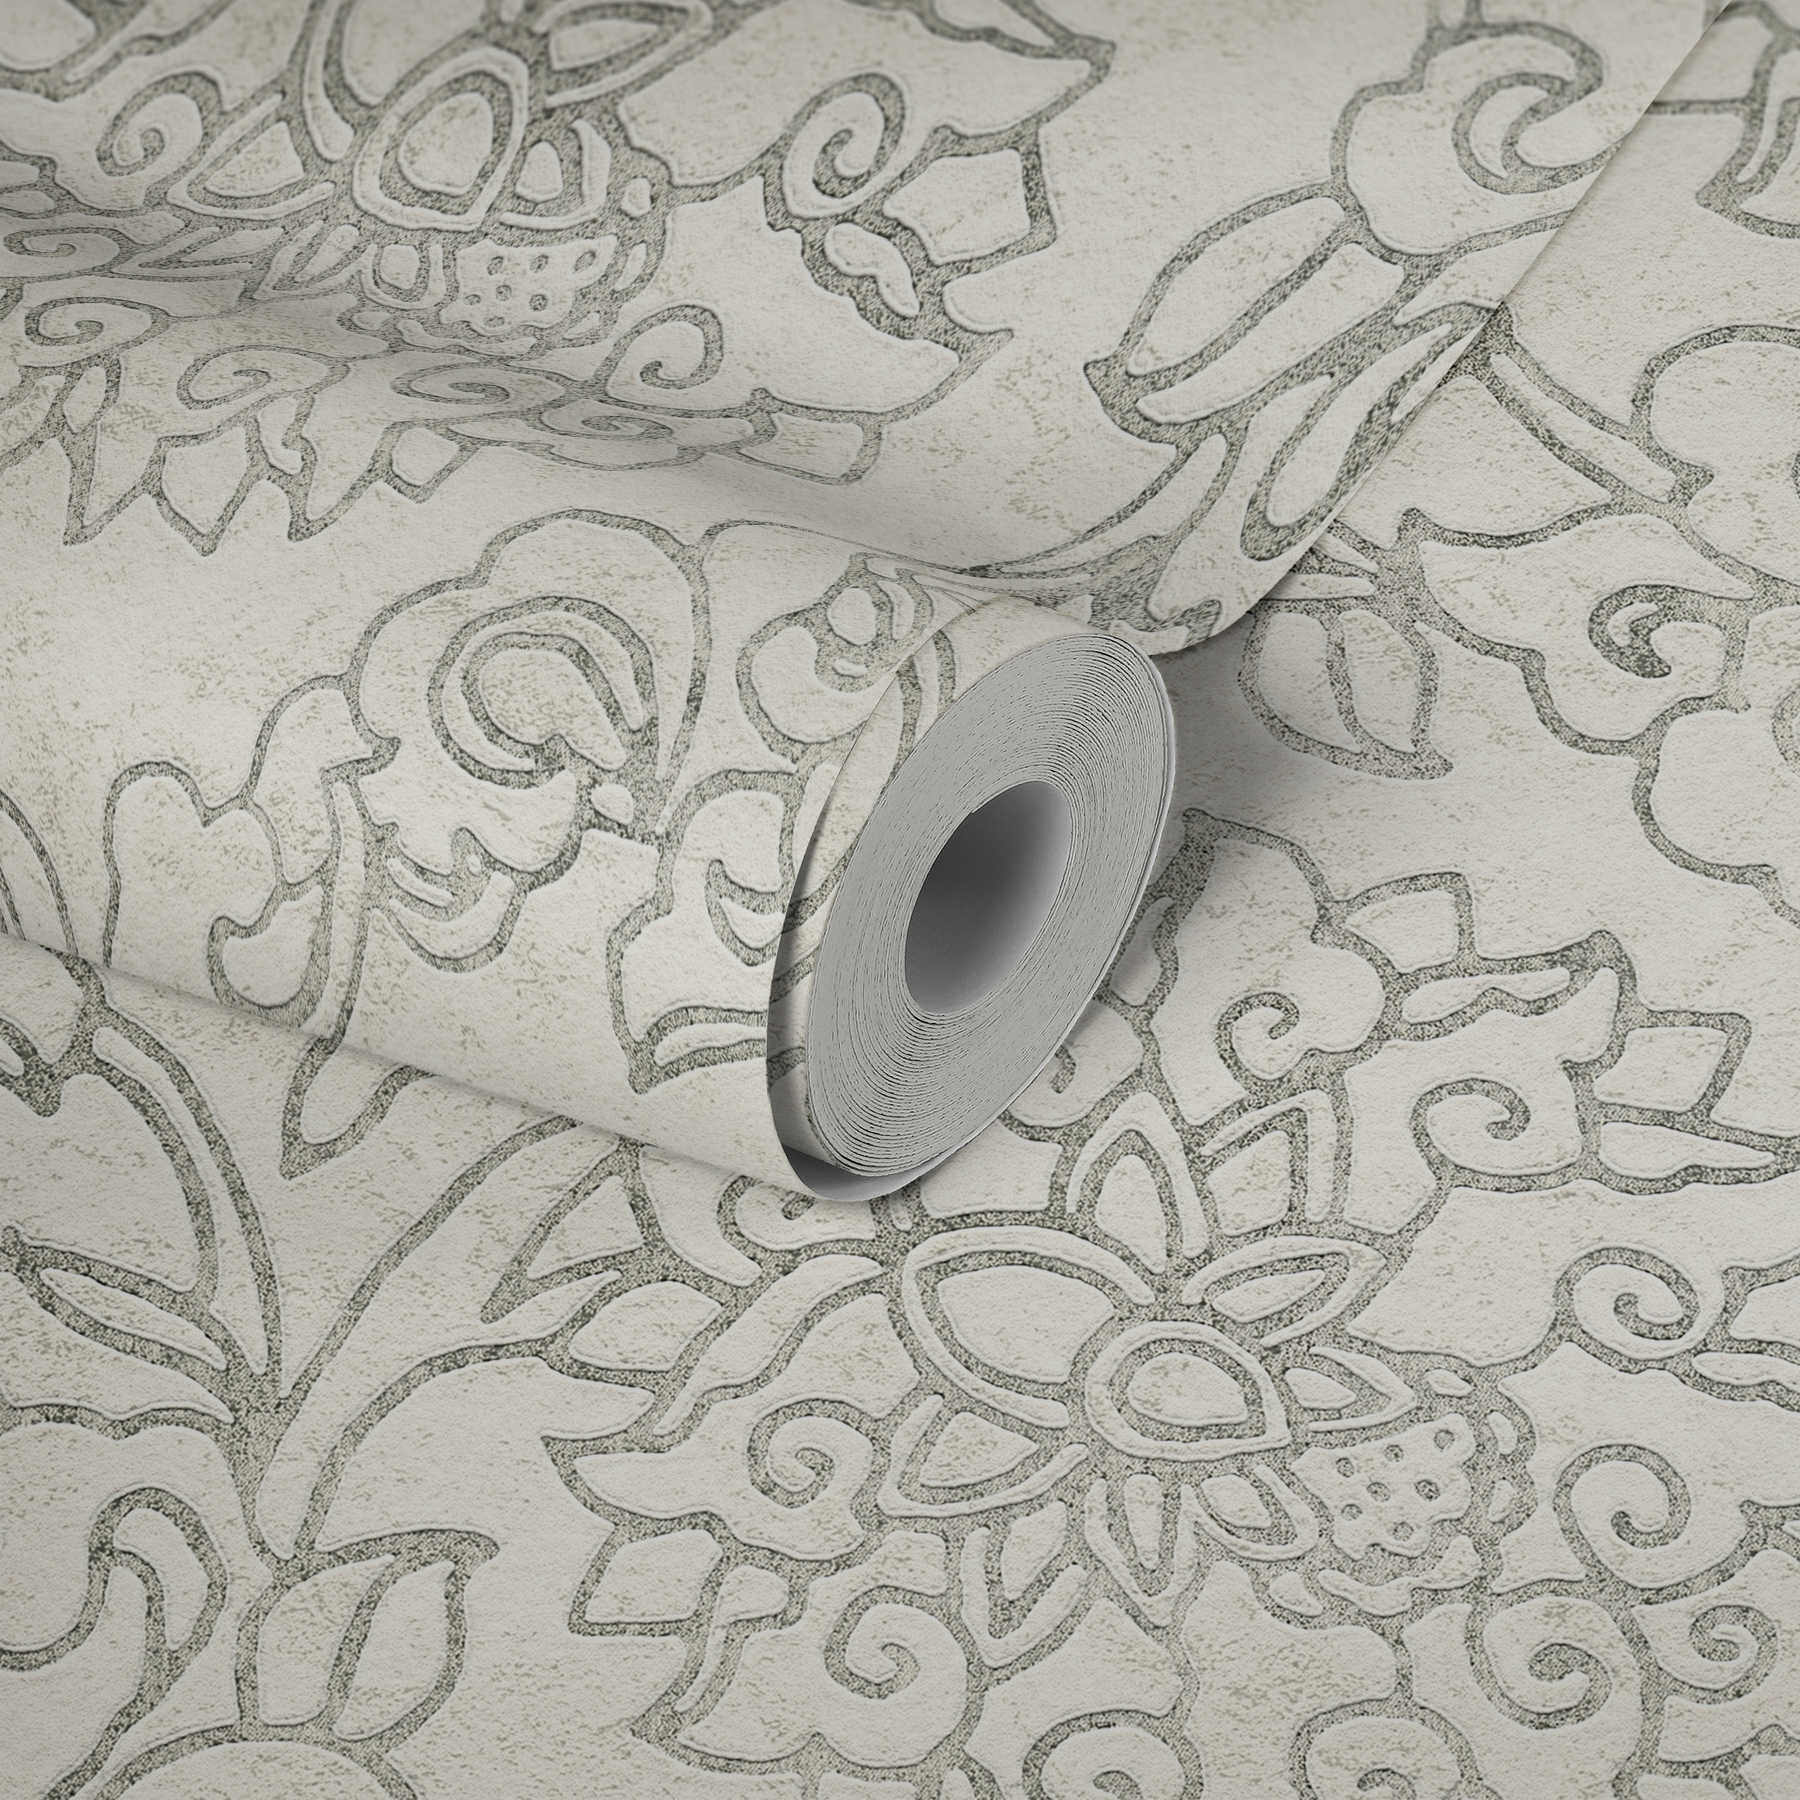             Bloemen sierbehang in Aziatische stijl met gouden accenten - wit, zilver, grijs
        